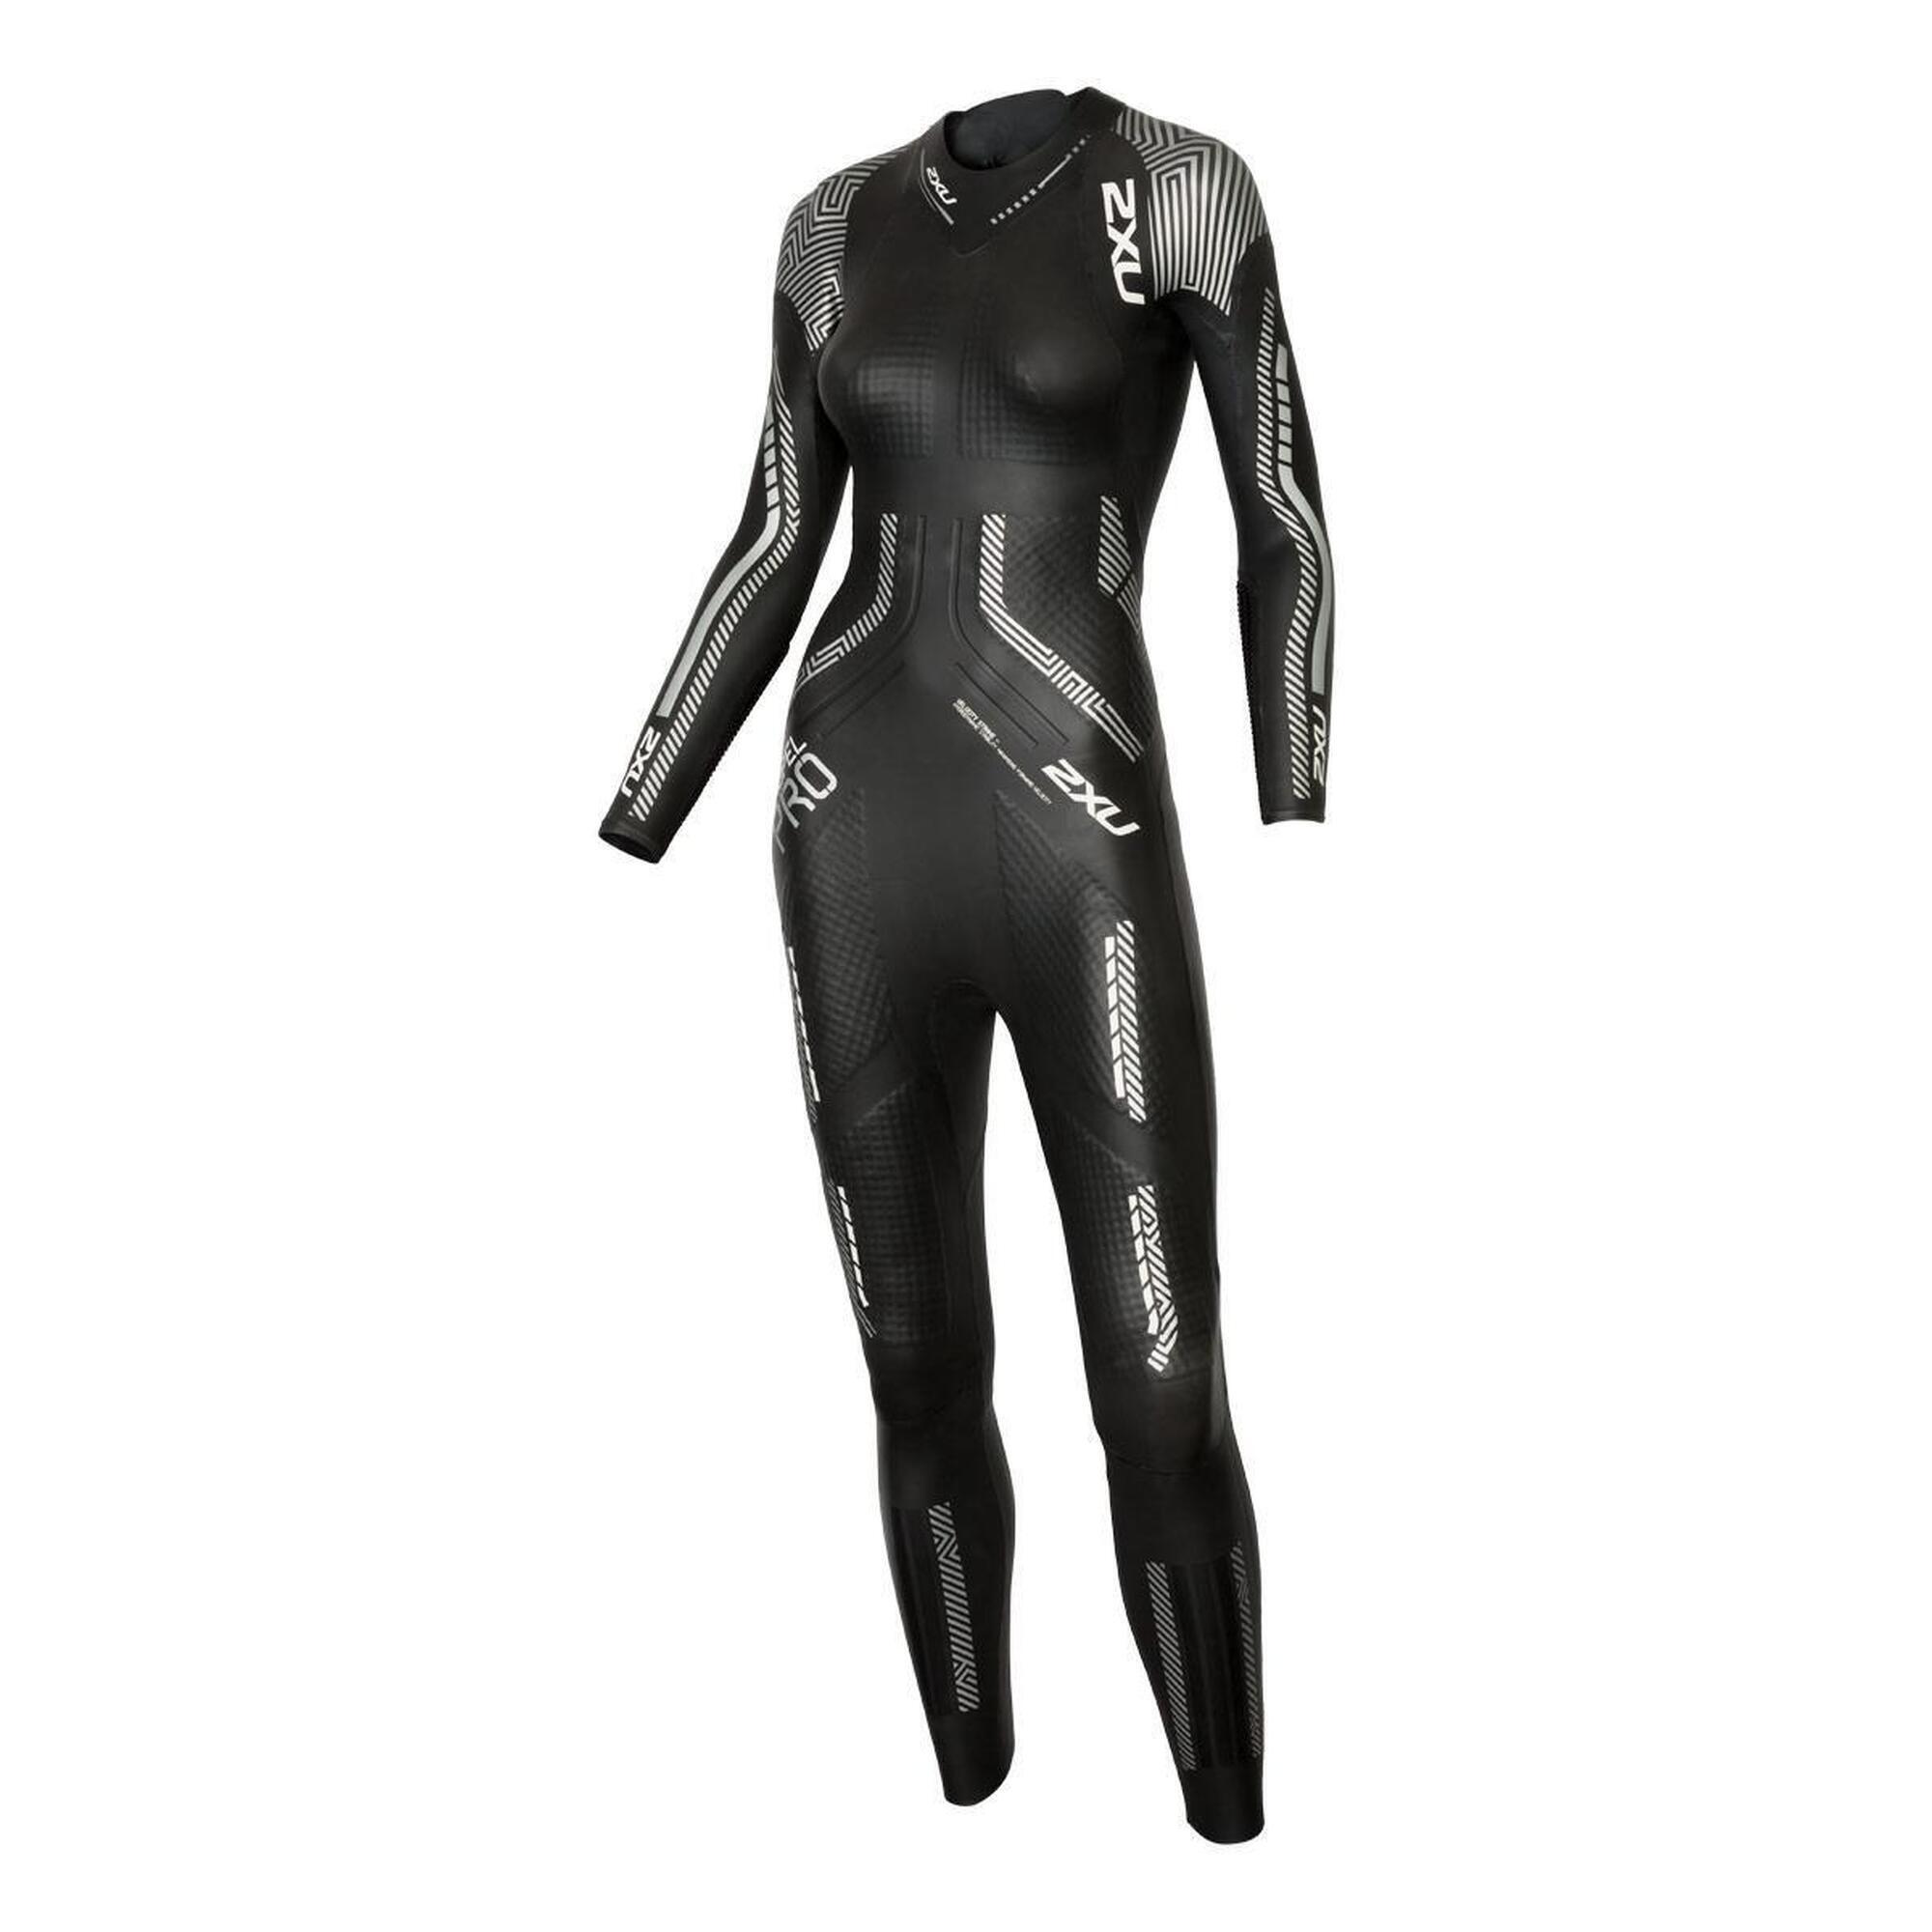 2XU Women's Propel Pro Wetsuit - Black/Silver 1/3